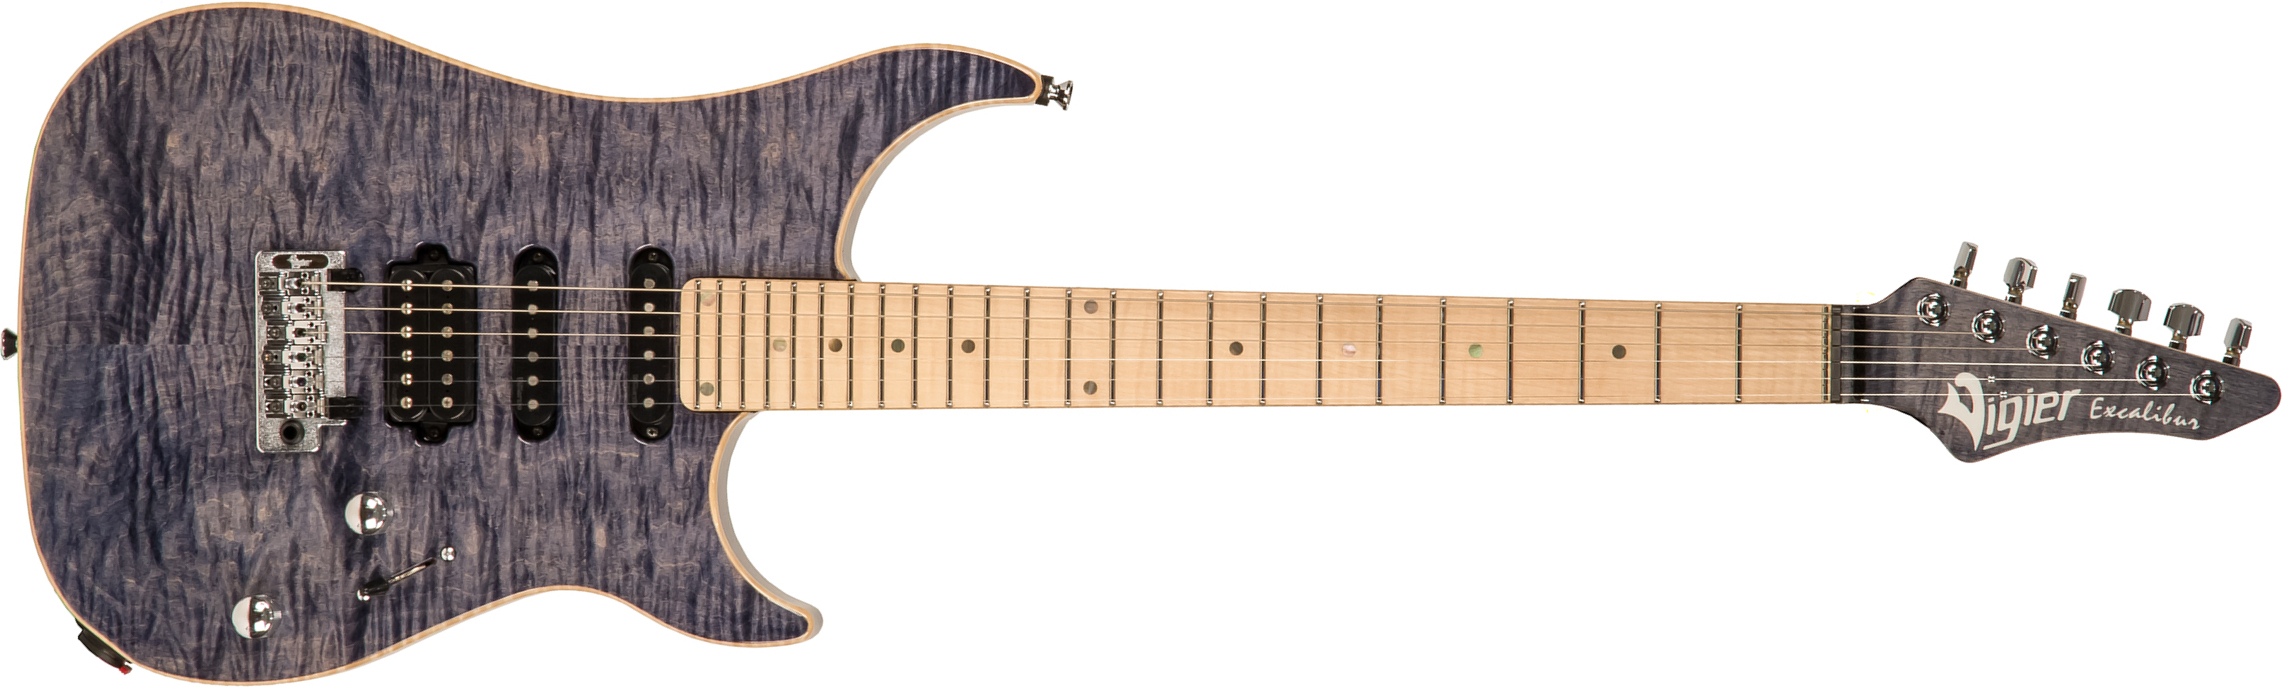 Vigier Excalibur Ultra Blues Hss Trem Mn - Light Sapphire - Guitarra eléctrica con forma de str. - Main picture